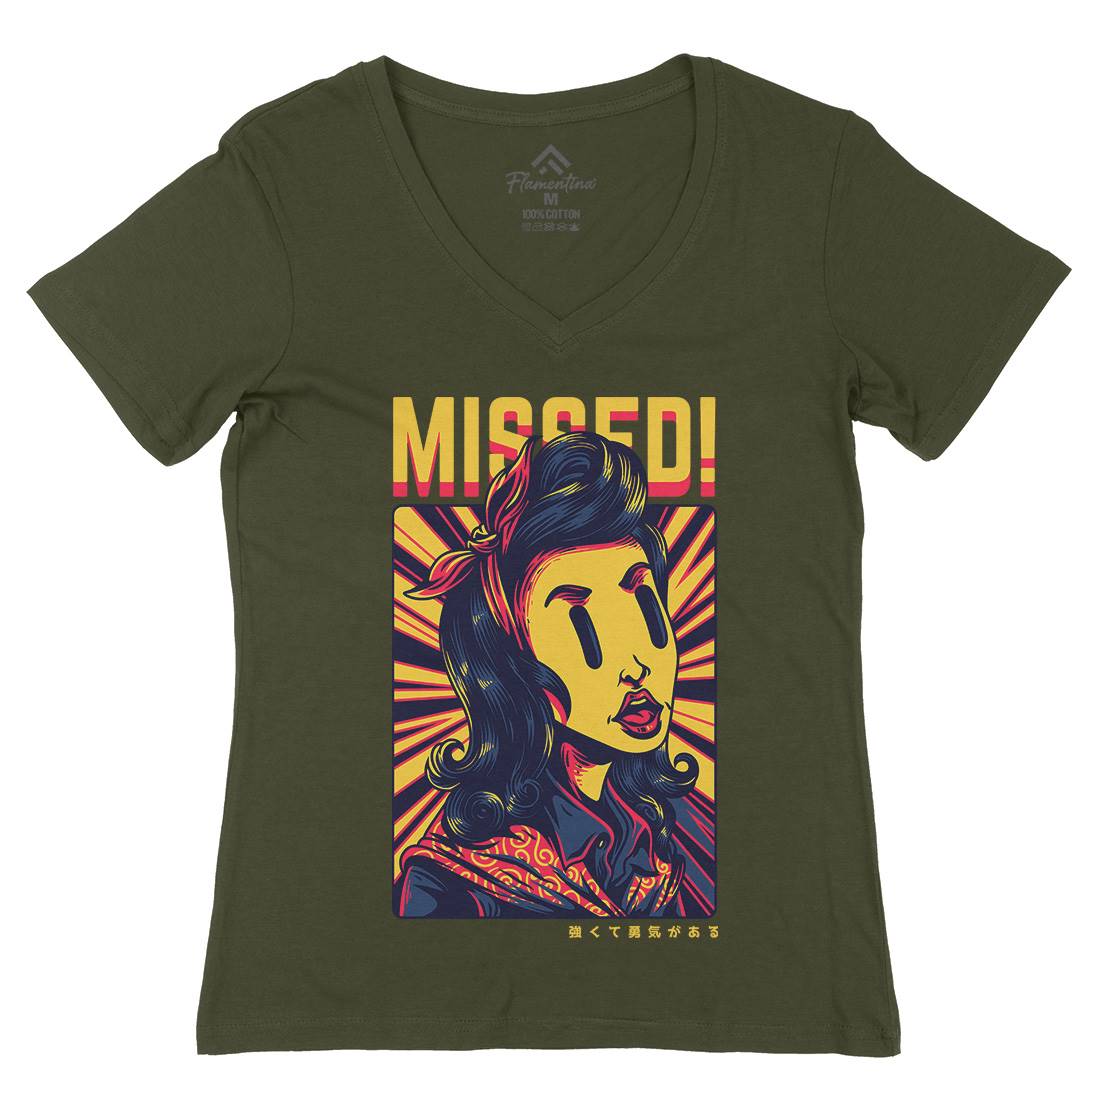 Missed Girl Womens Organic V-Neck T-Shirt Retro D654